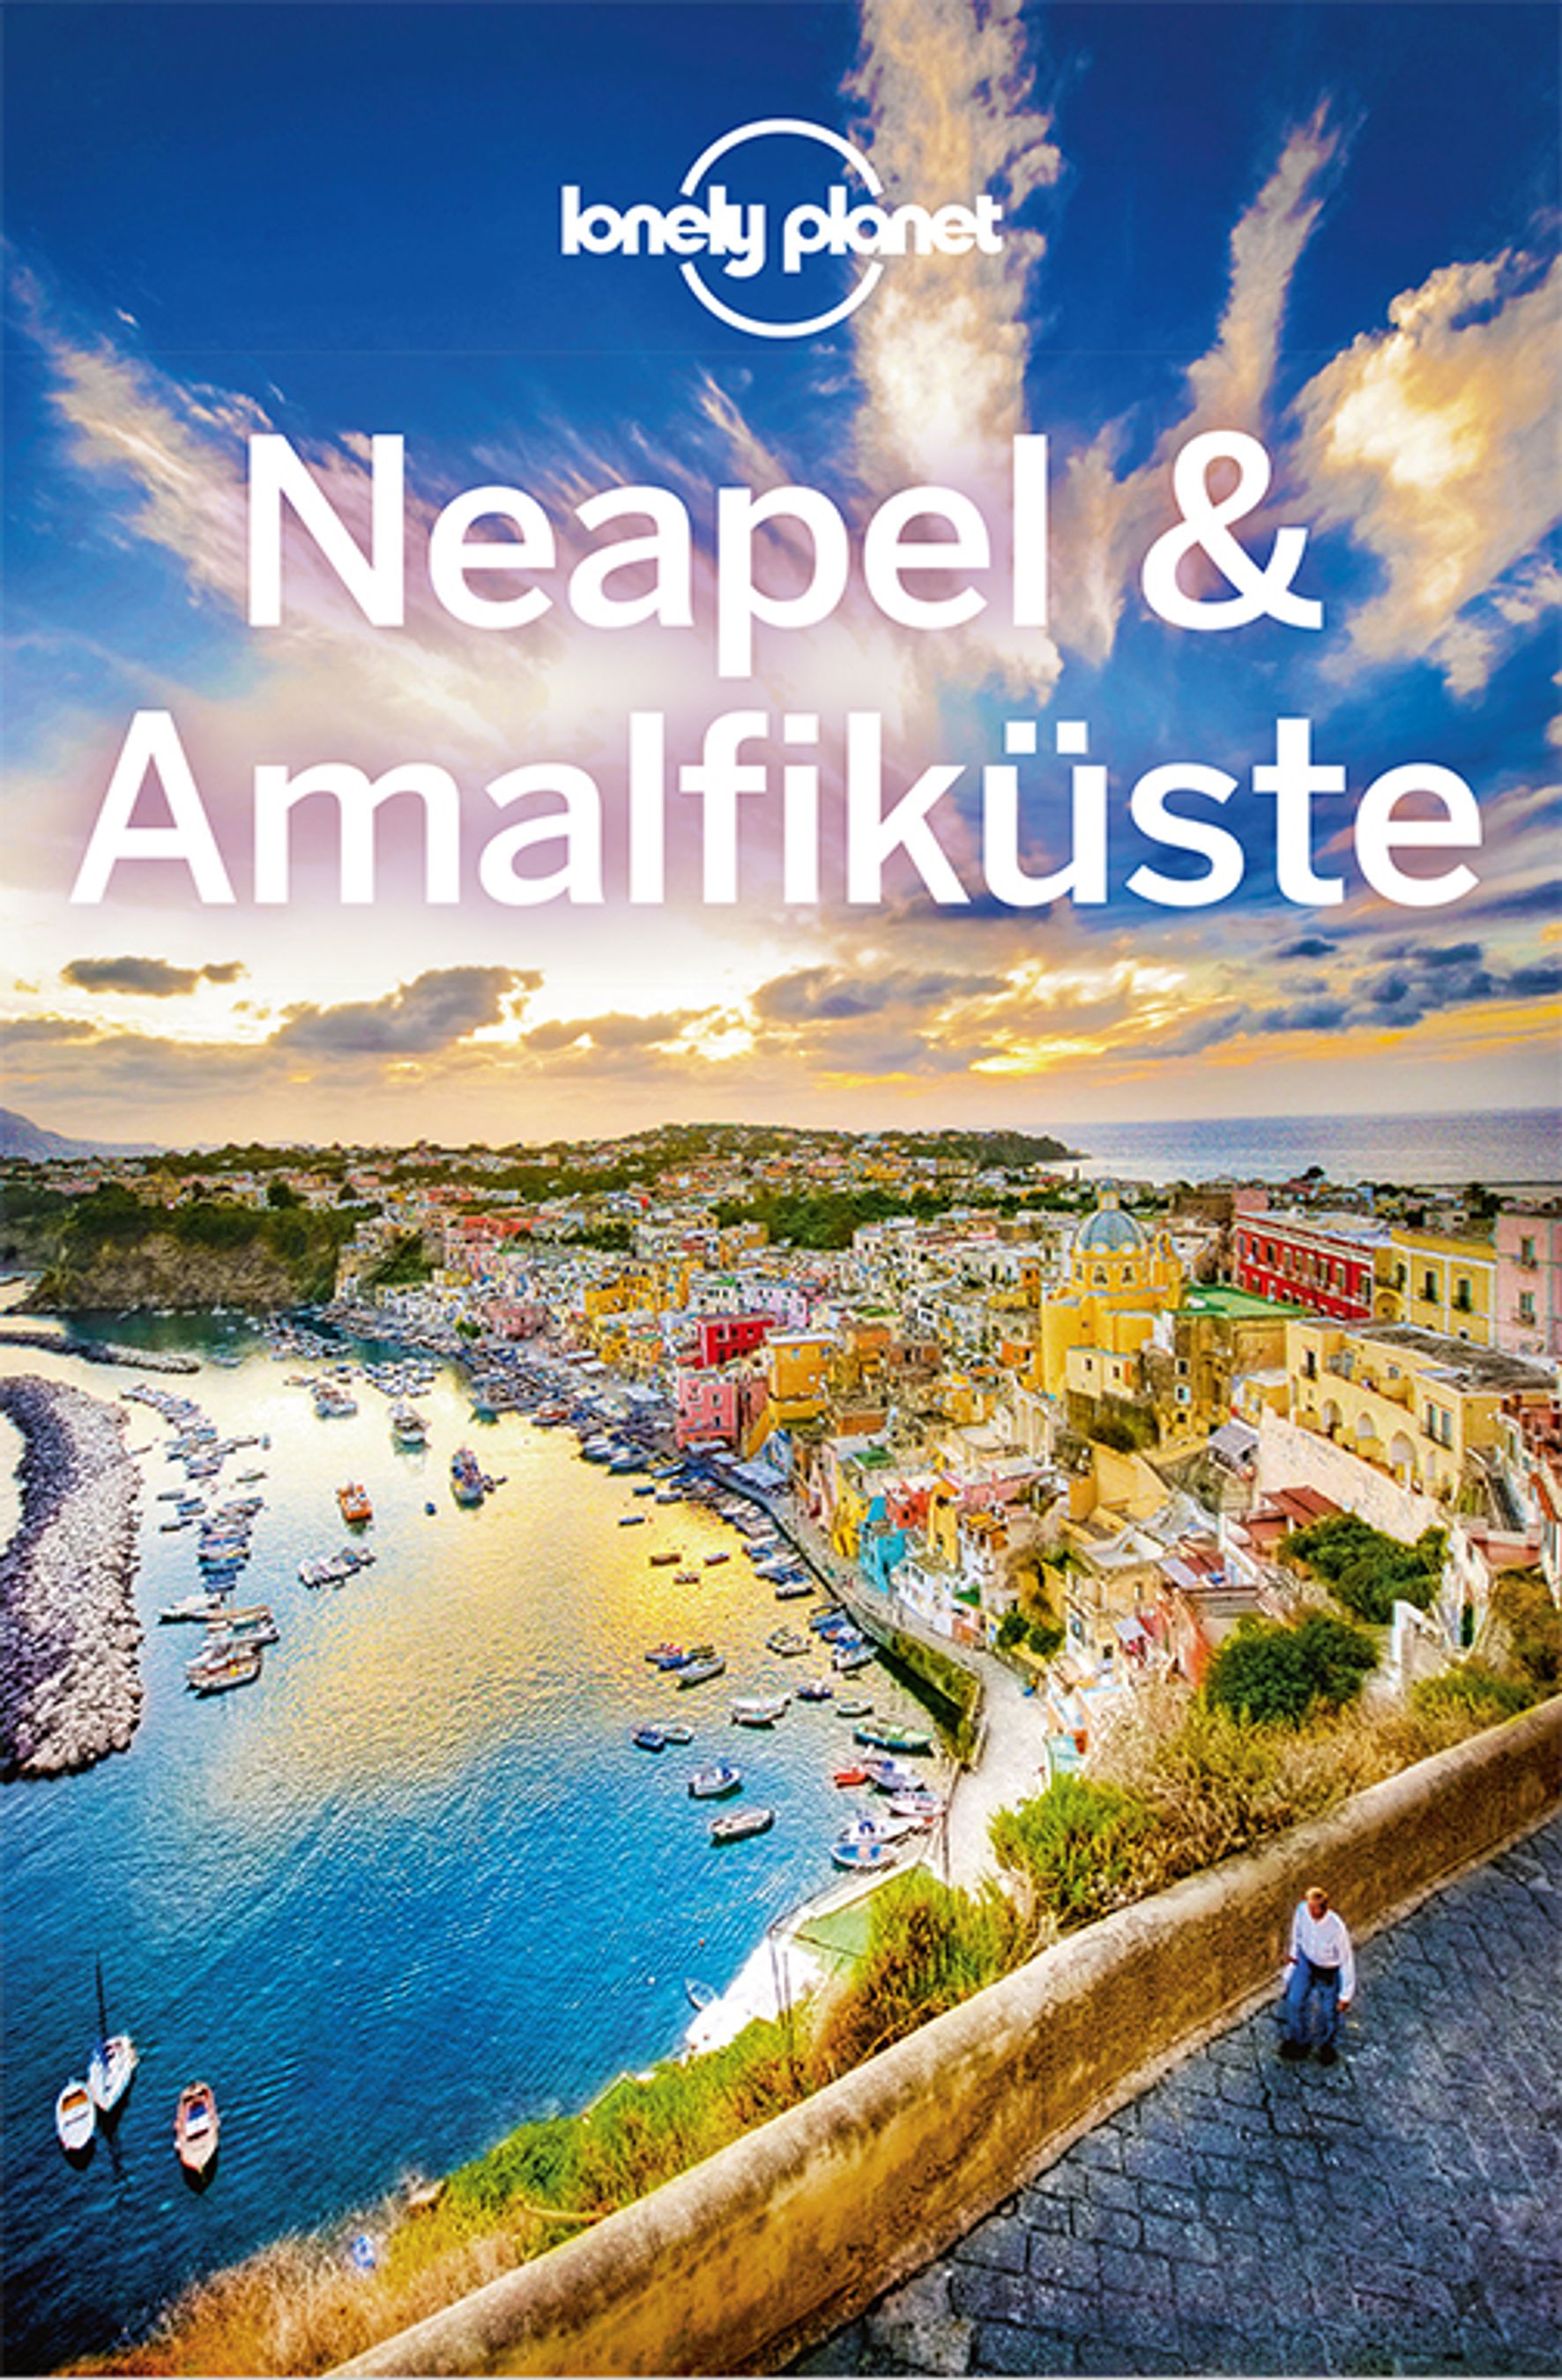 Lonely Planet Neapel & Amalfiküste (eBook)